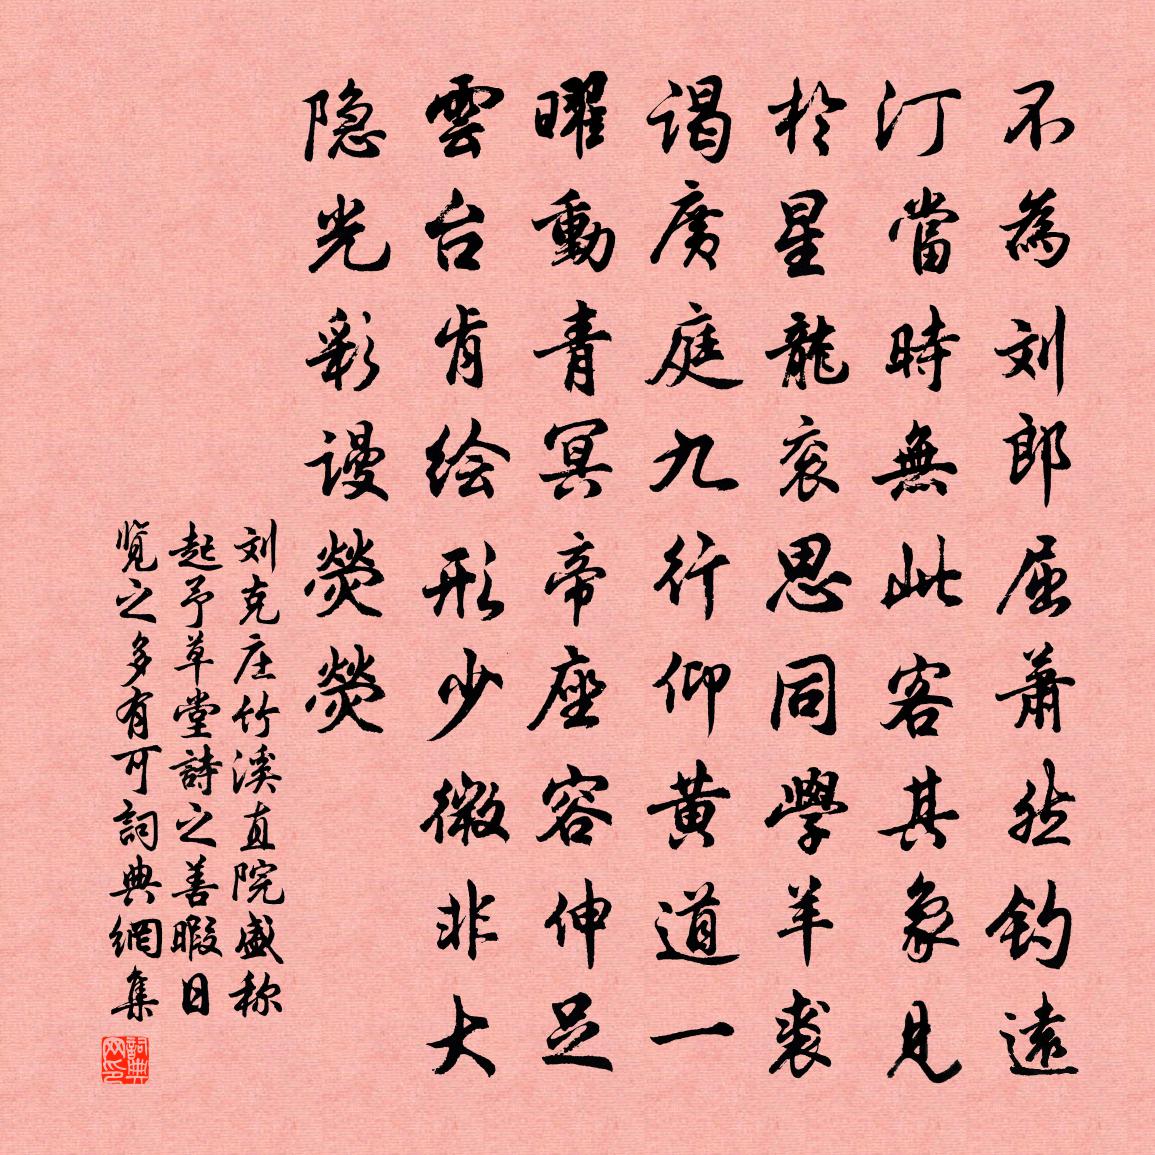 刘克庄竹溪直院盛称起予草堂诗之善暇日览之多有可书法作品欣赏